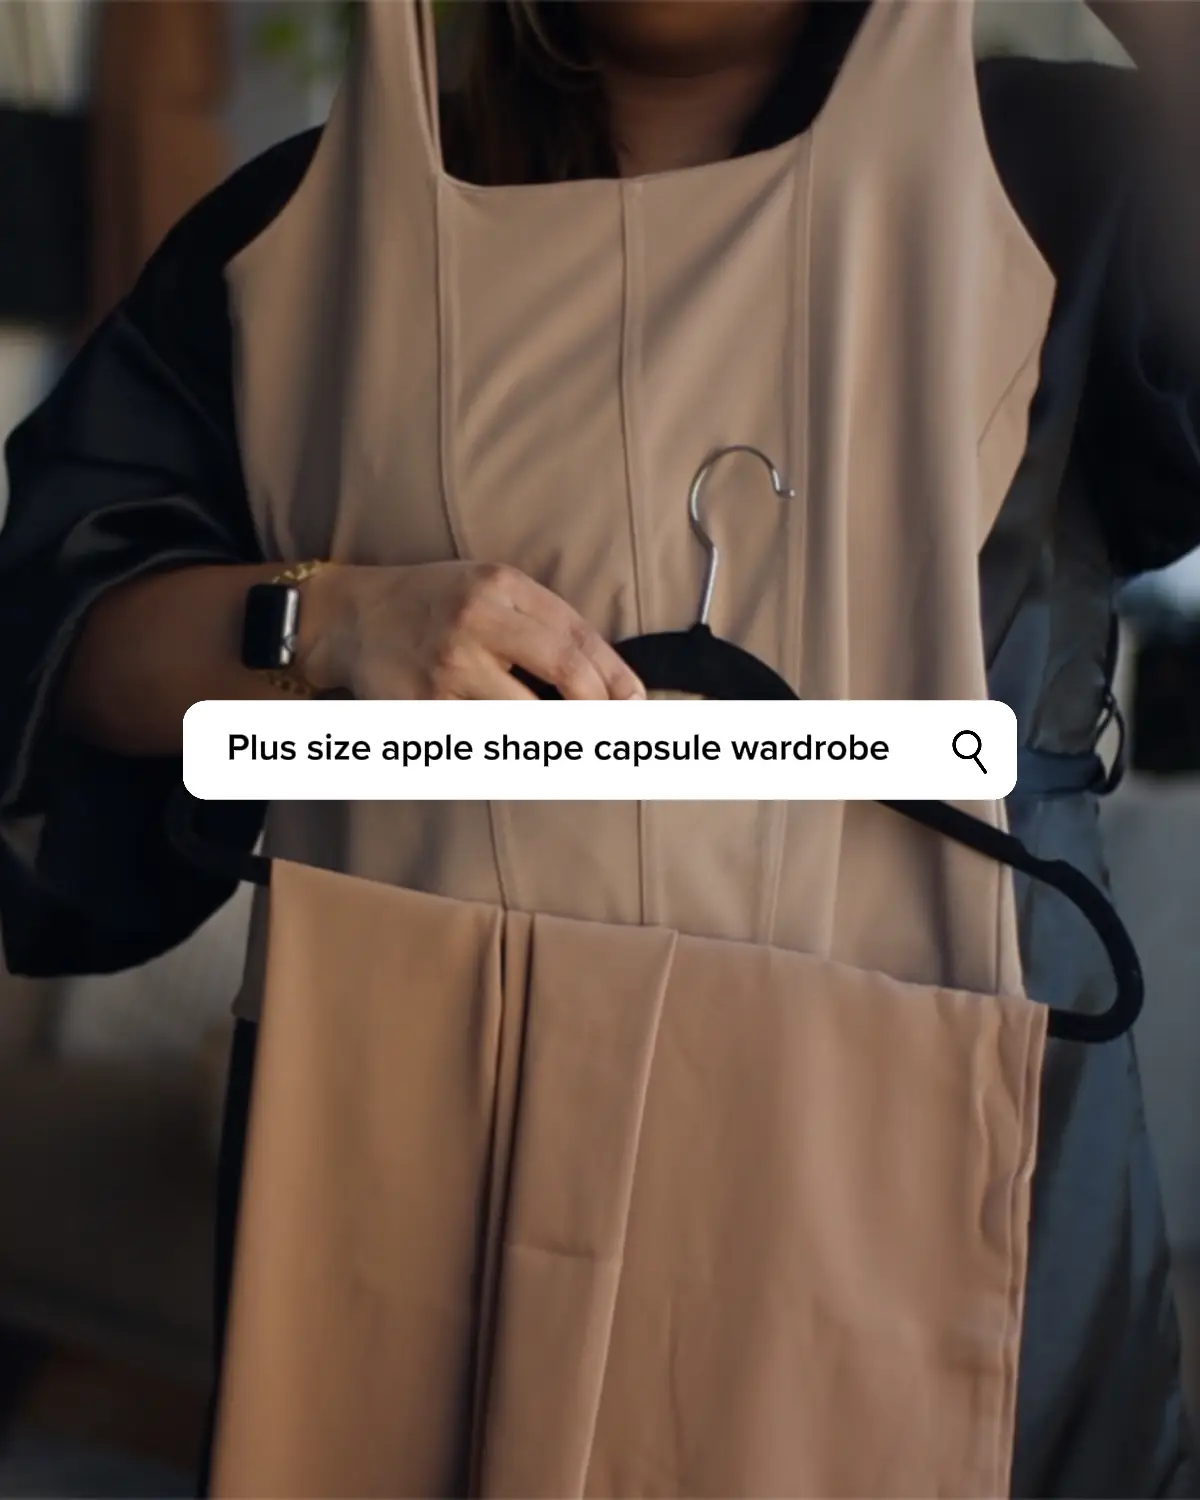 Plus size, apple shape body capsule wardrobe, Gallery posted by Xoxokaymo